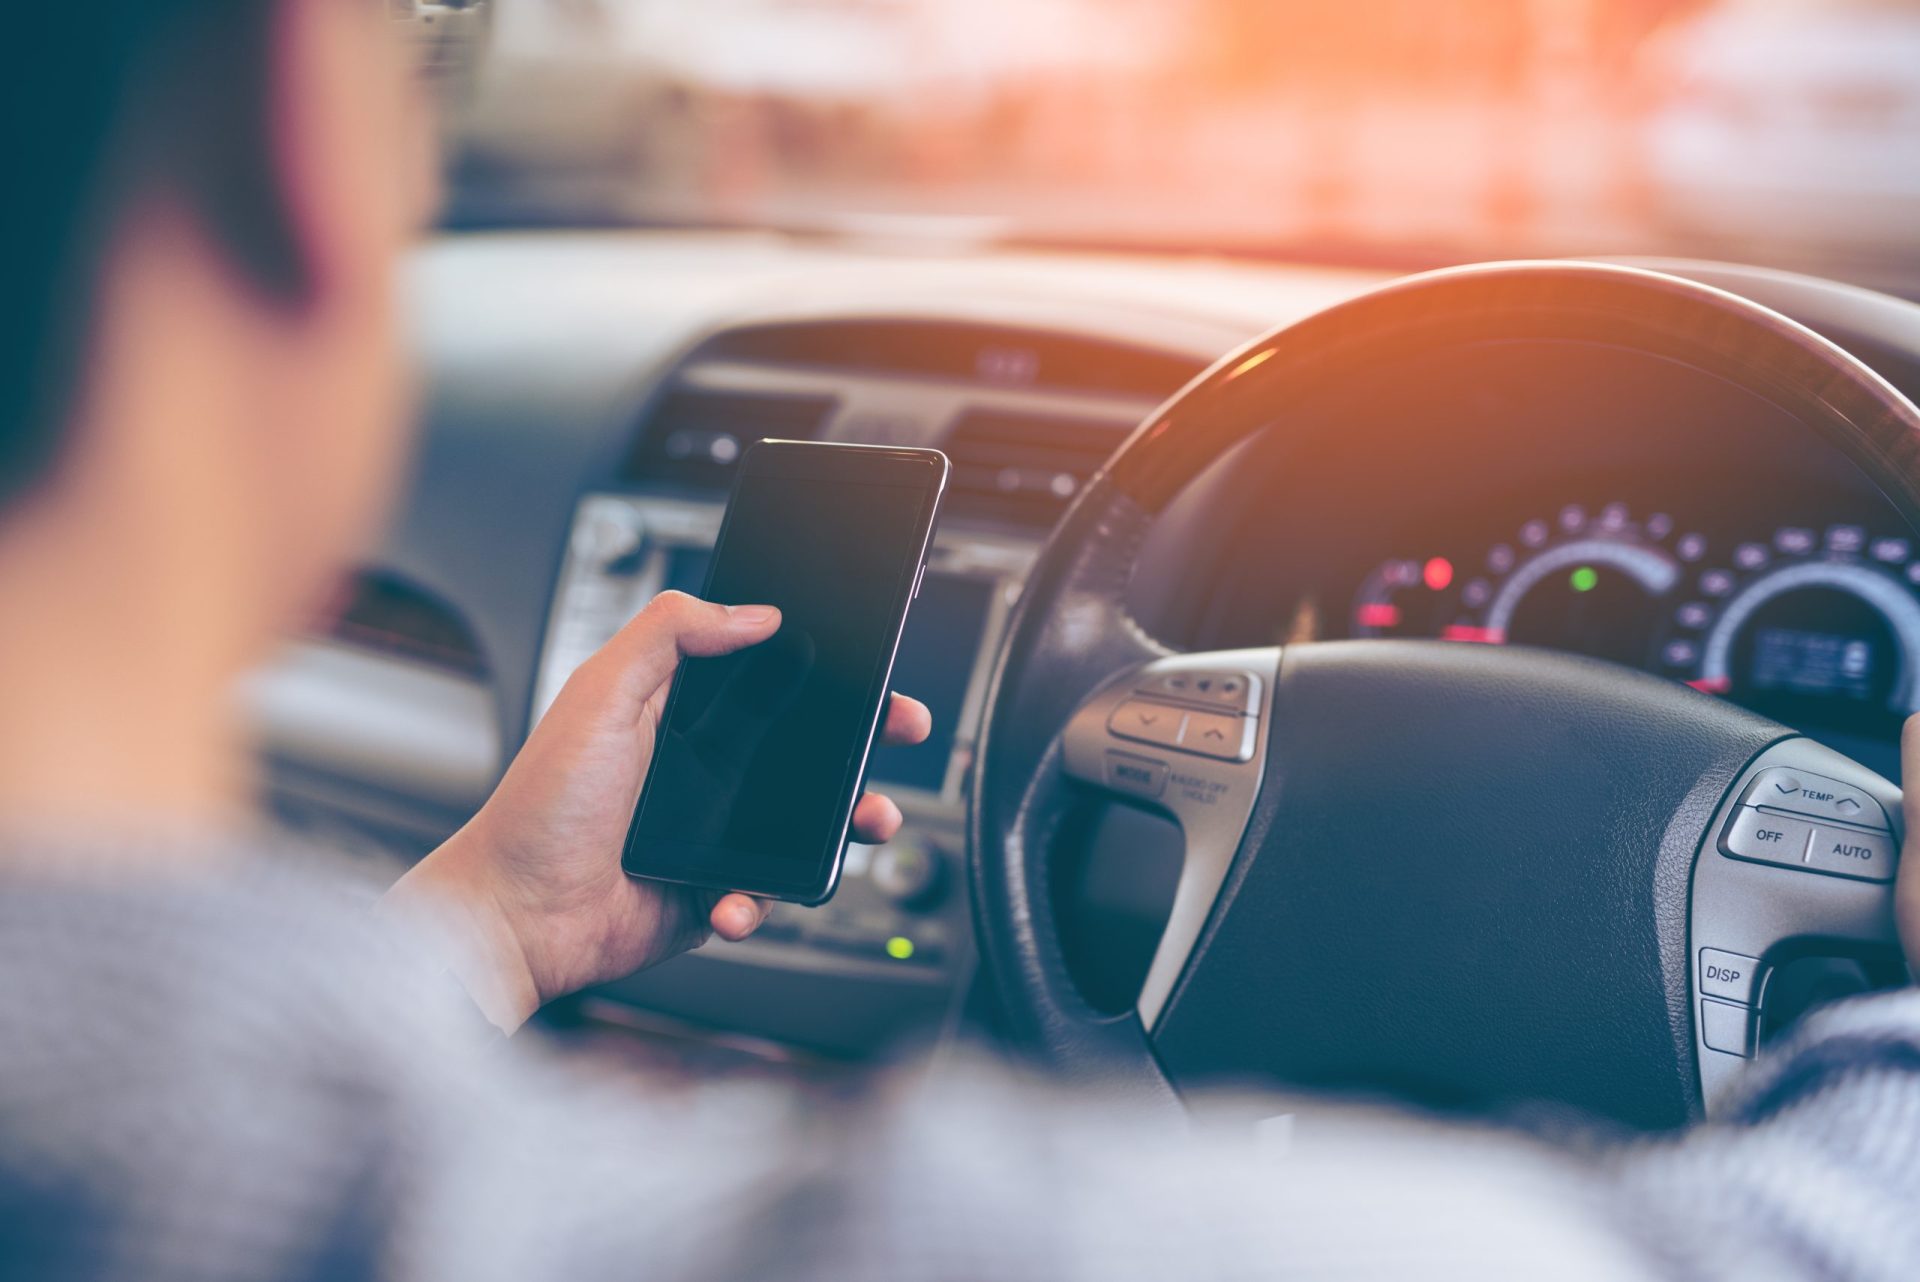 França proíbe uso de telemóvel na estrada mesmo com carro parado